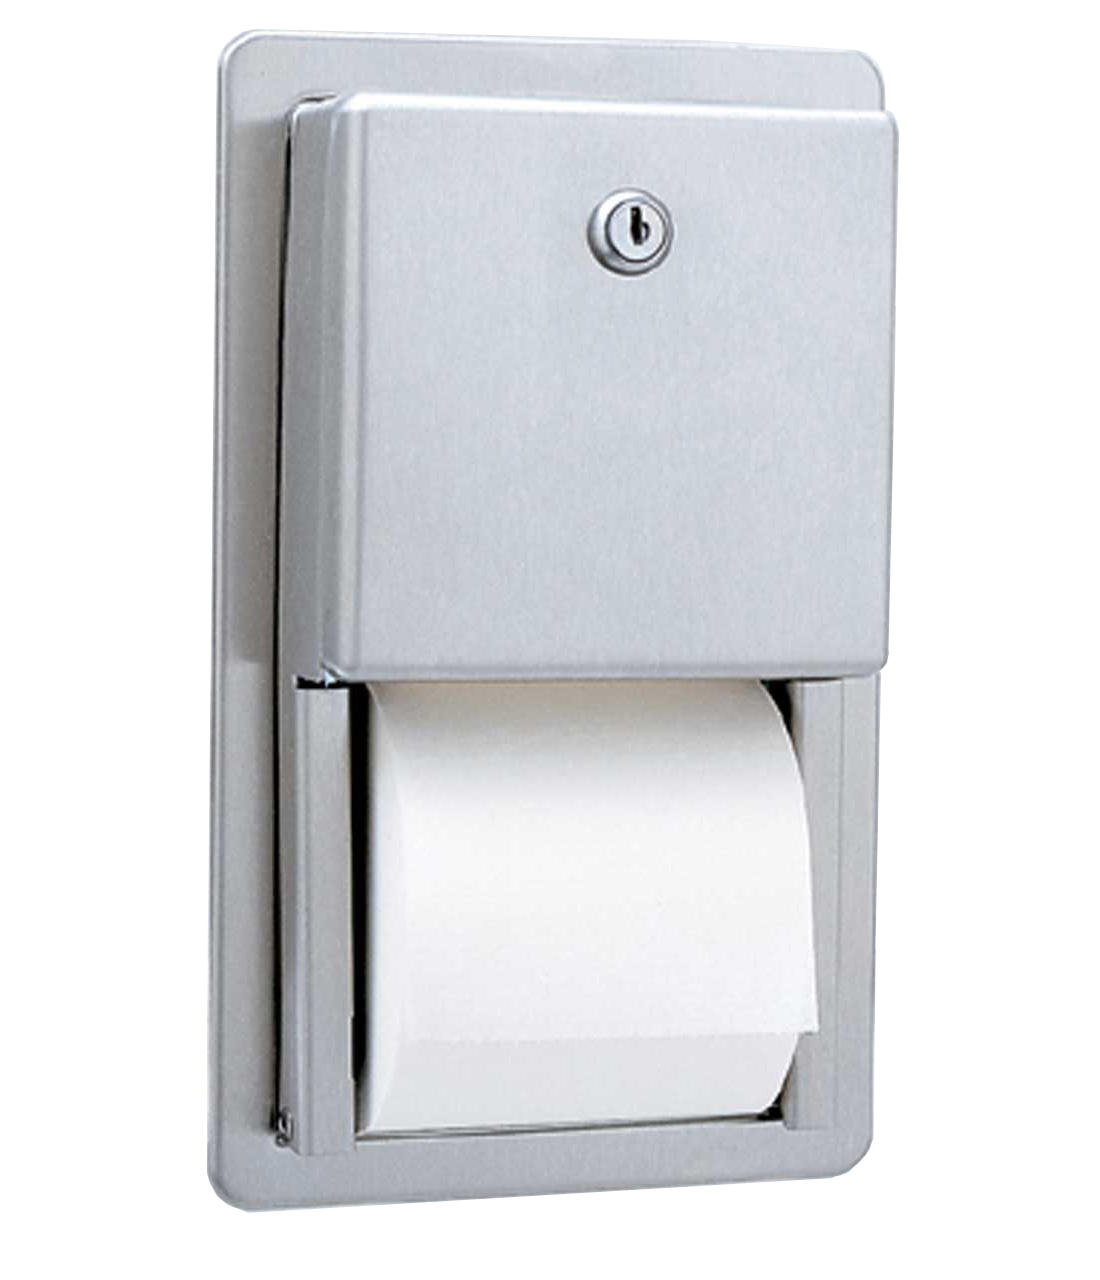 Recessed Multi-Roll Toilet Tissue Dispenser - (Model #: ttd-6) Image